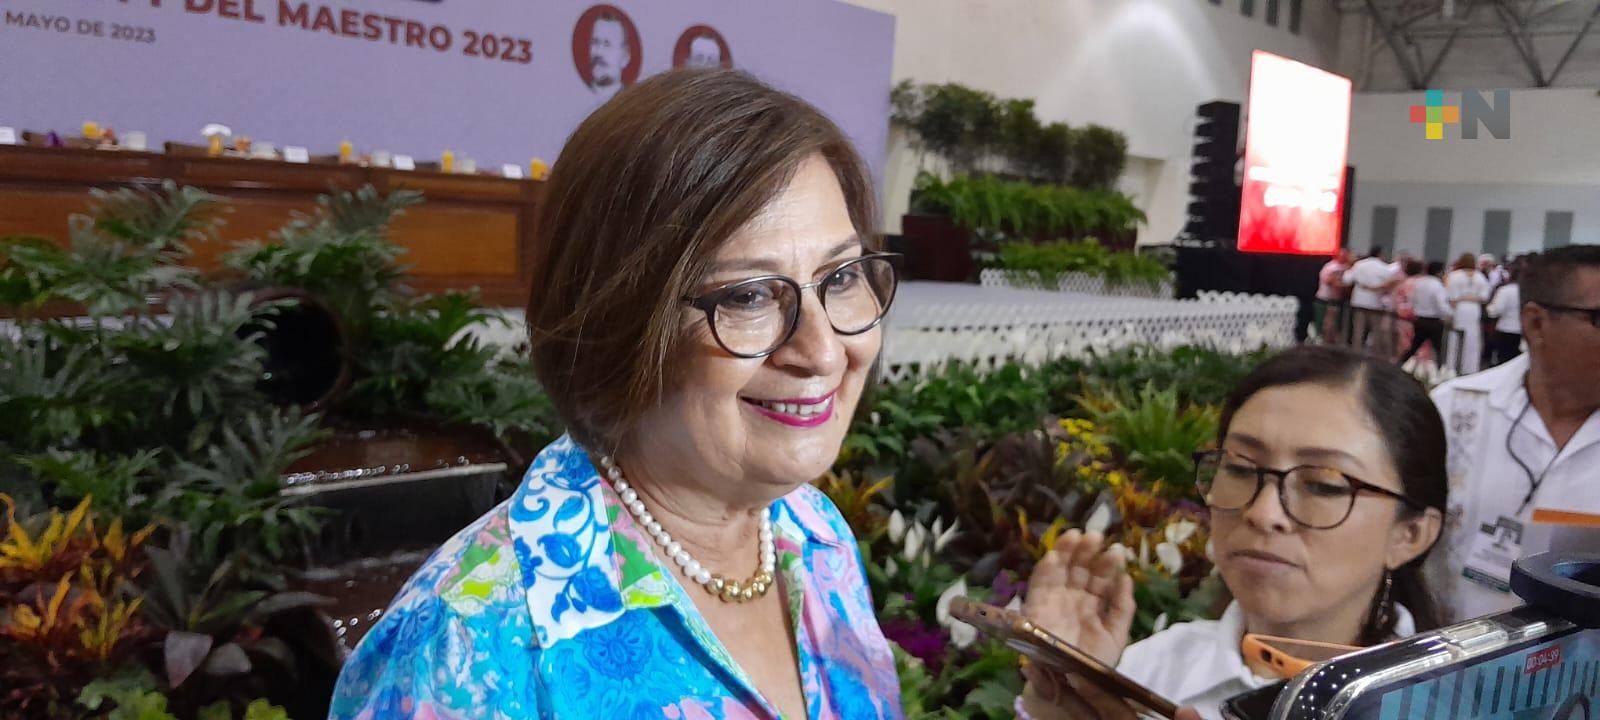 Reitera Margarita Corro postura en contra de avalar actuaciones contrarias a la justicia